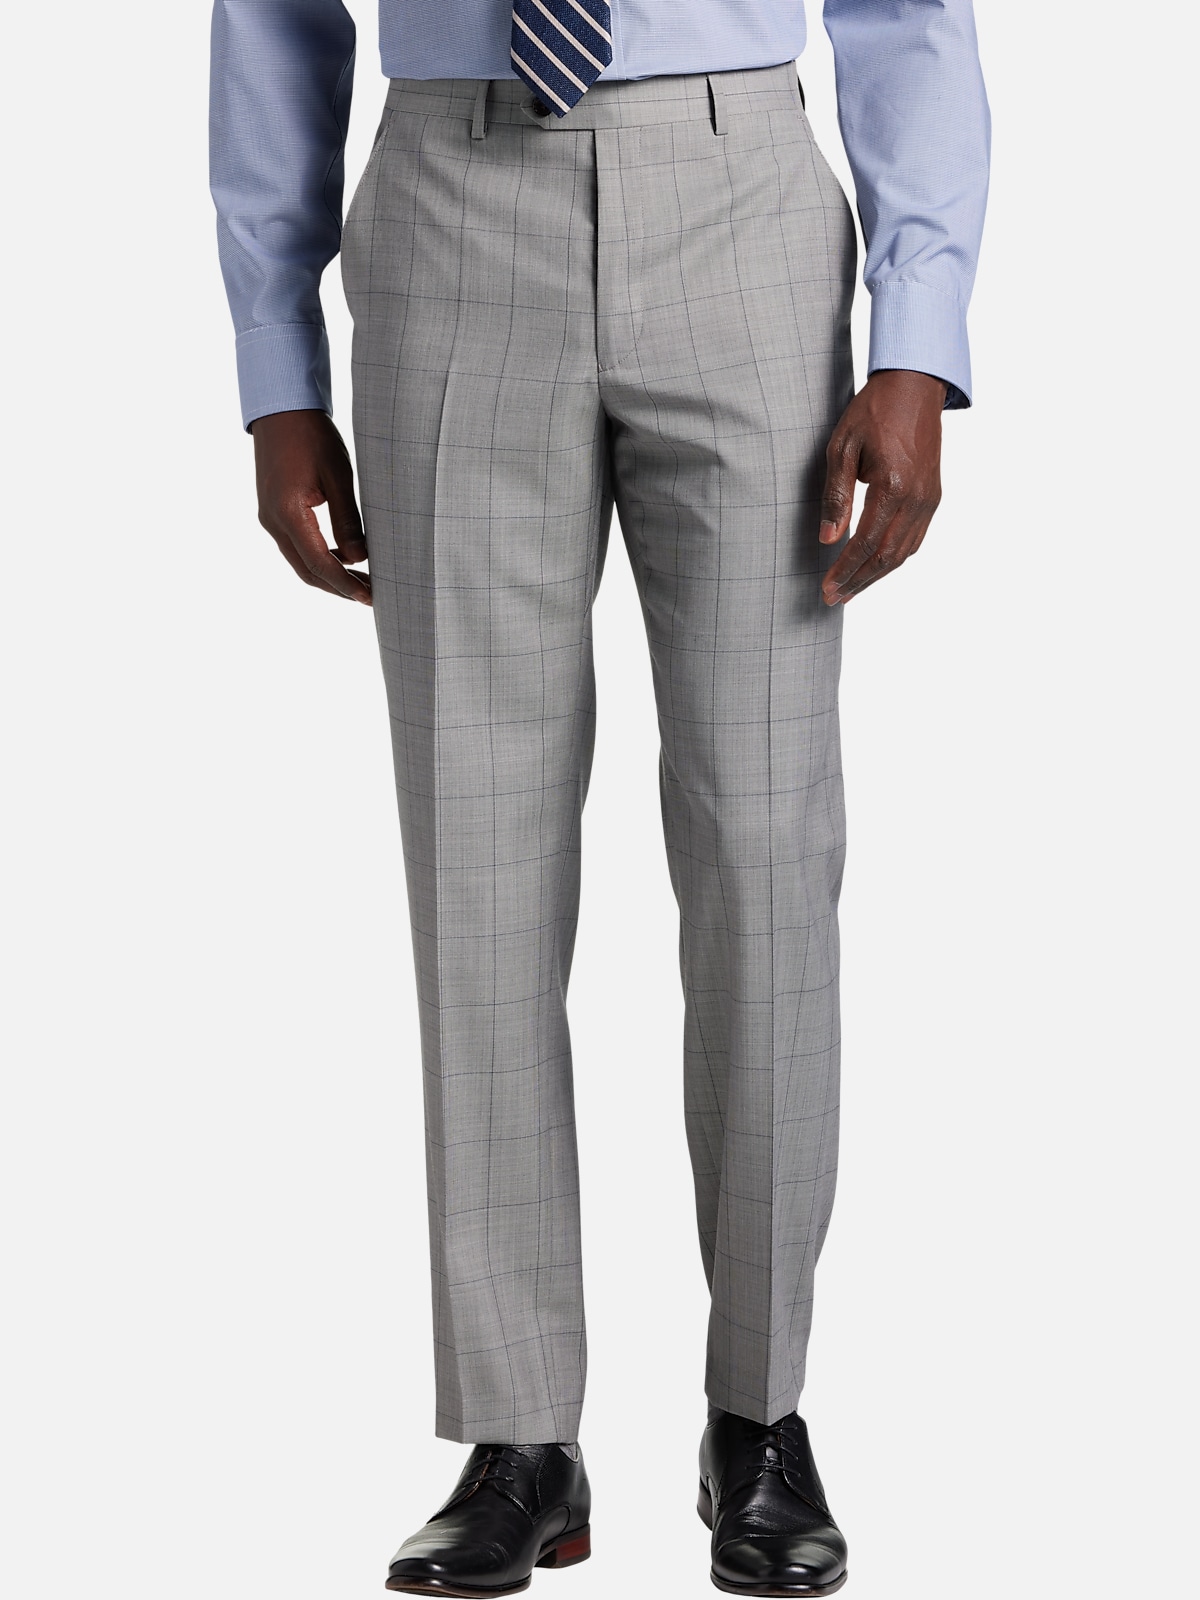 Lauren By Ralph Lauren Classic Fit Suit Separates Pants | Pants| Men's ...